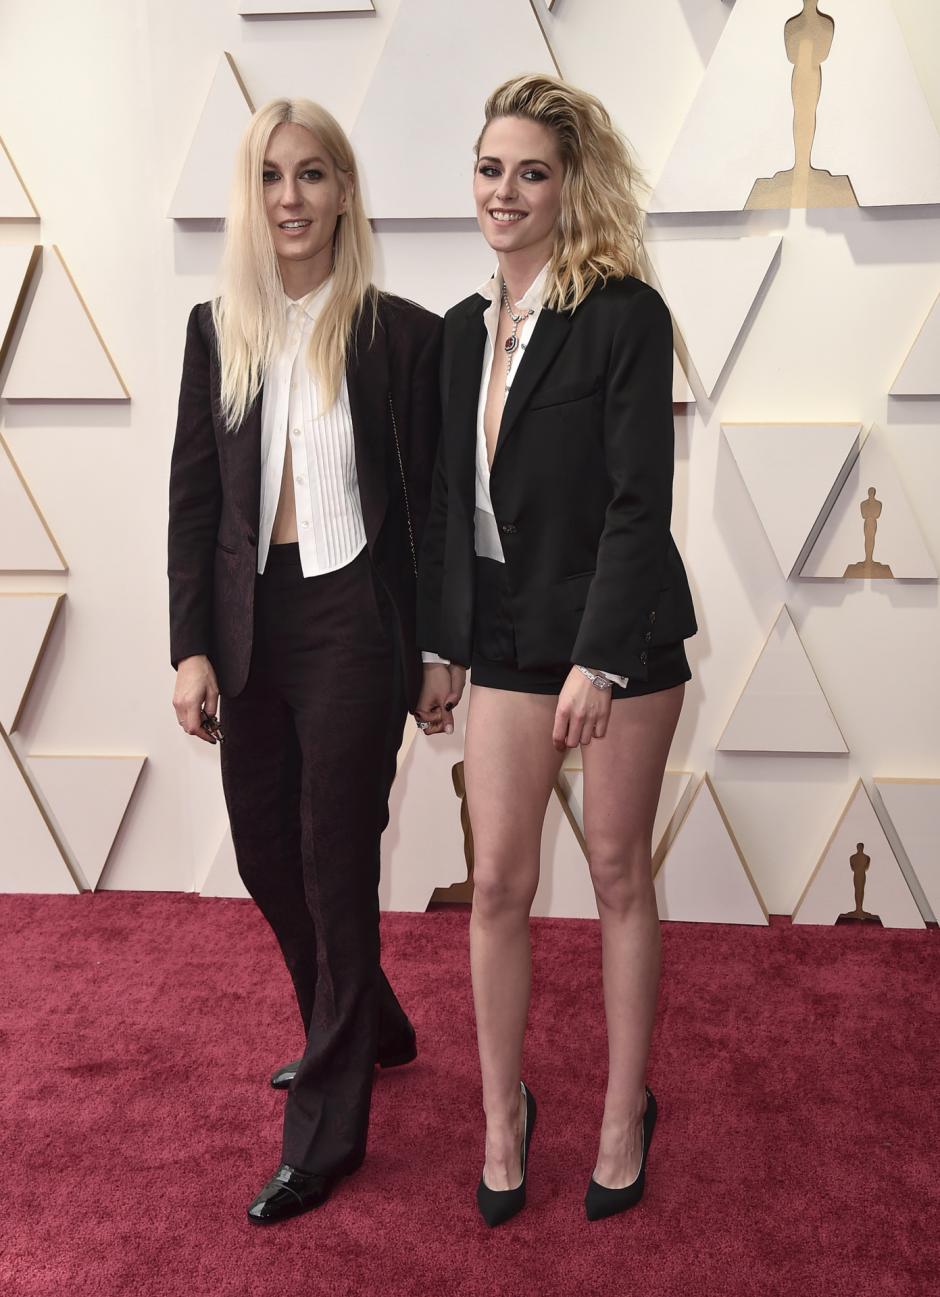 Dylan Meyer y Kristen Stewart en la alfombra roja de los Oscar 2022, saltándose el protocolo de vestimenta de la gala, que dictamina que las mujeres deben ir con vestido largo